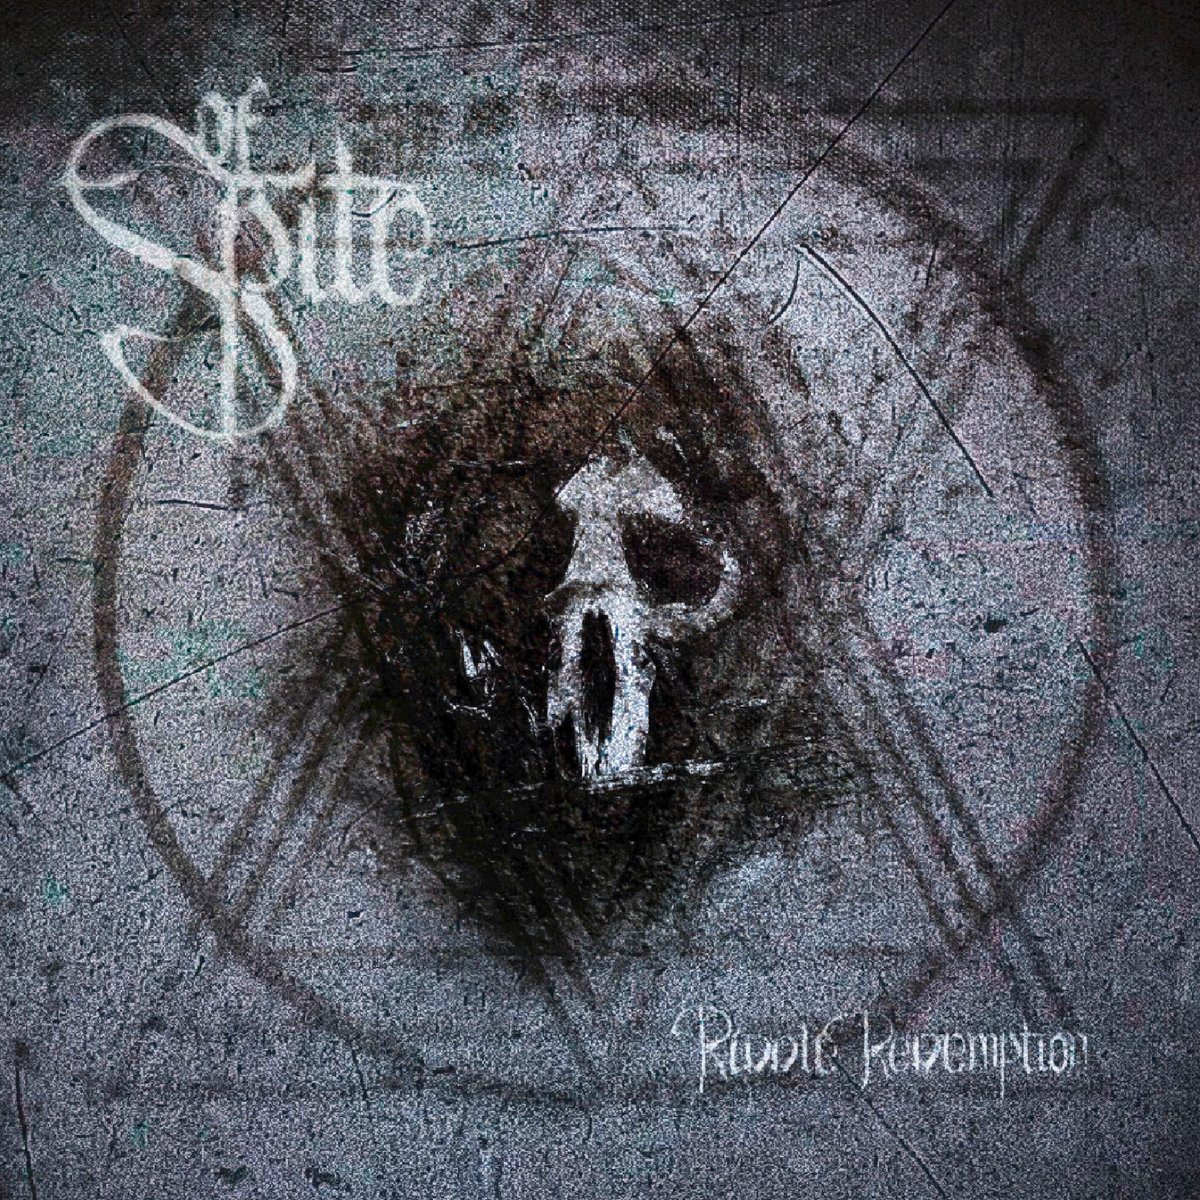 Of Spite - "Riddle Redemption" - 2023